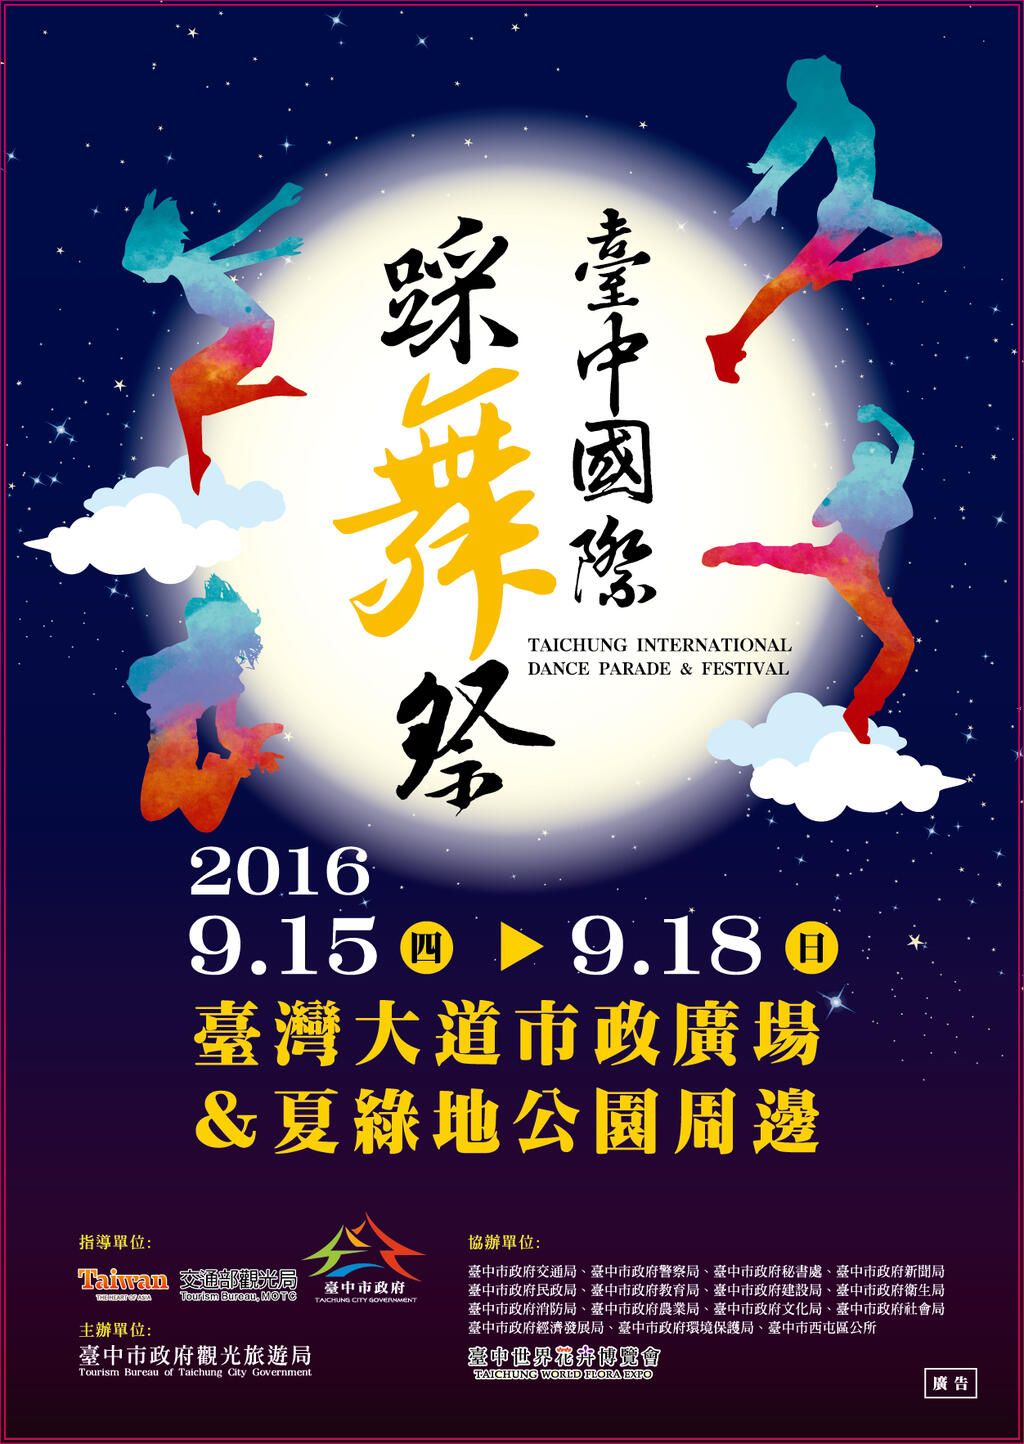 2016台中国际踩舞祭9/15~18－台中观光旅游网Taichung Tourism